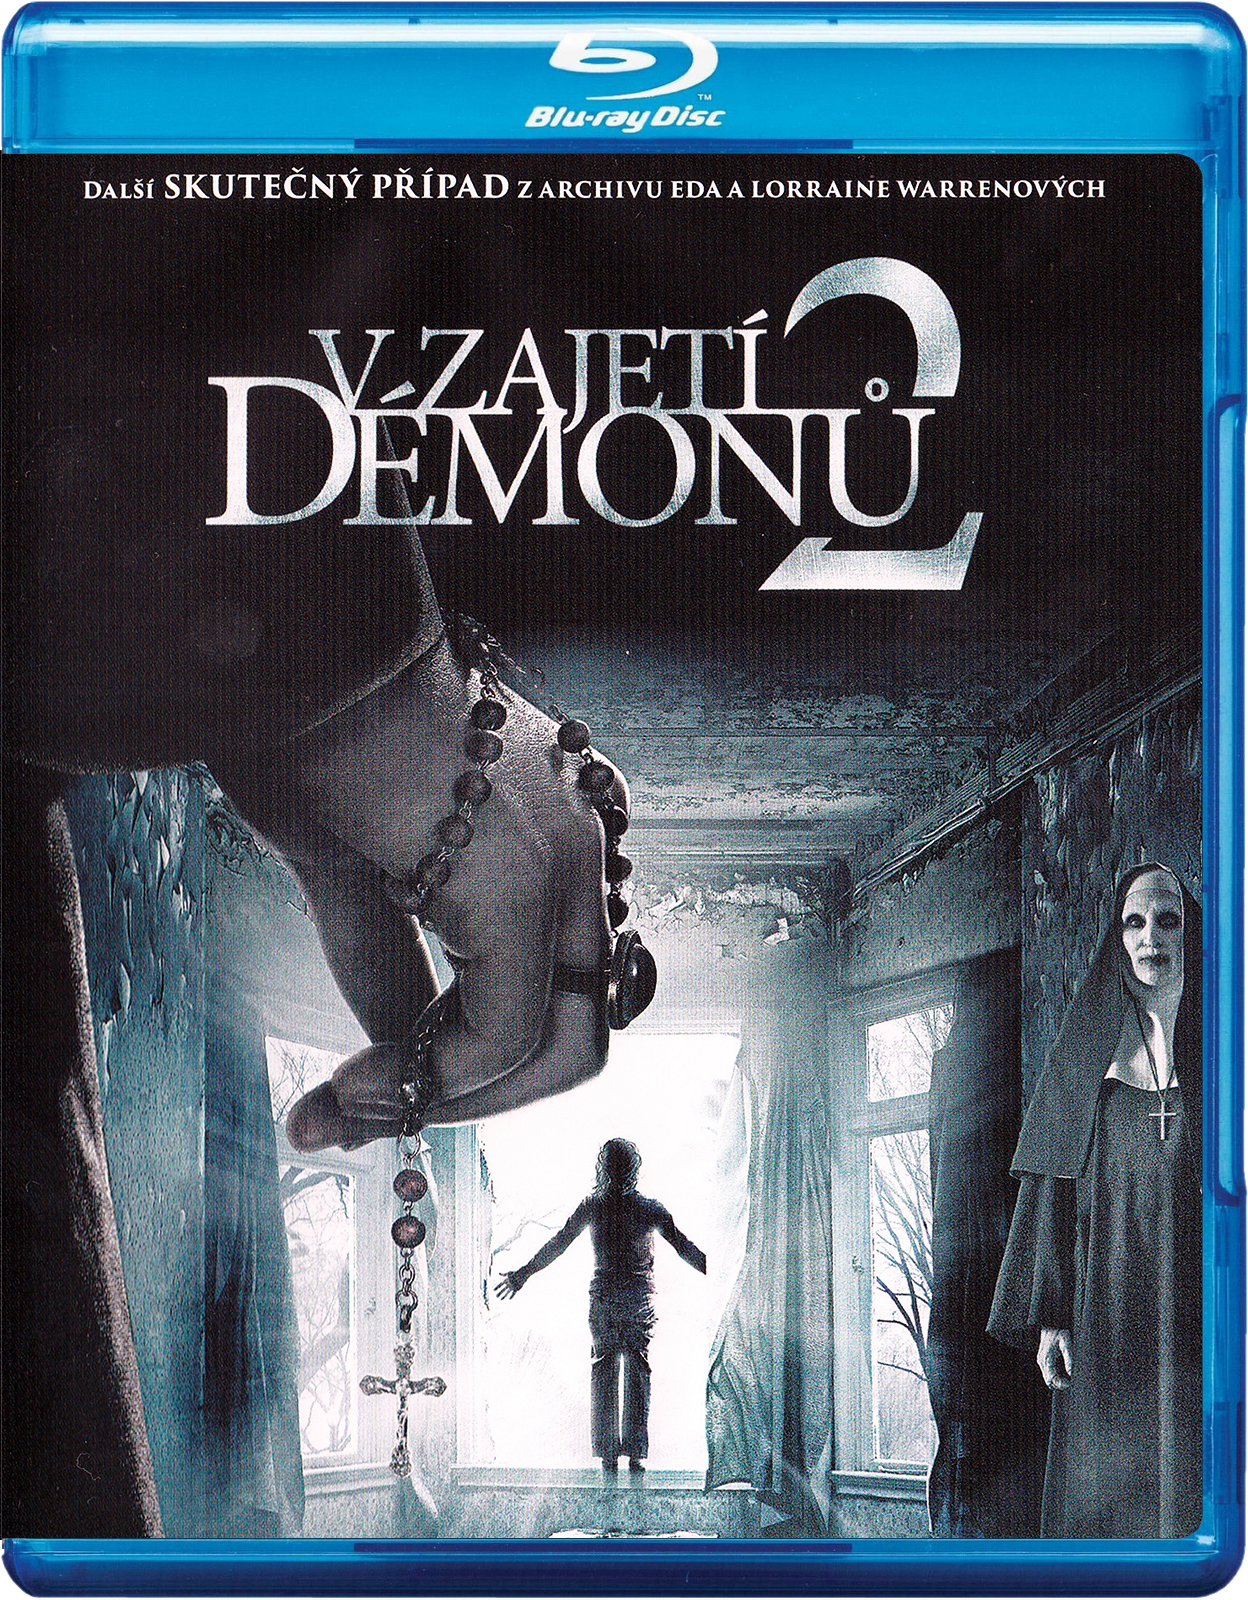 Stiahni si HD Filmy V zajeti demonu 2 / The Conjuring 2 (2016)(CZ/EN)[1080pHD] = CSFD 78%